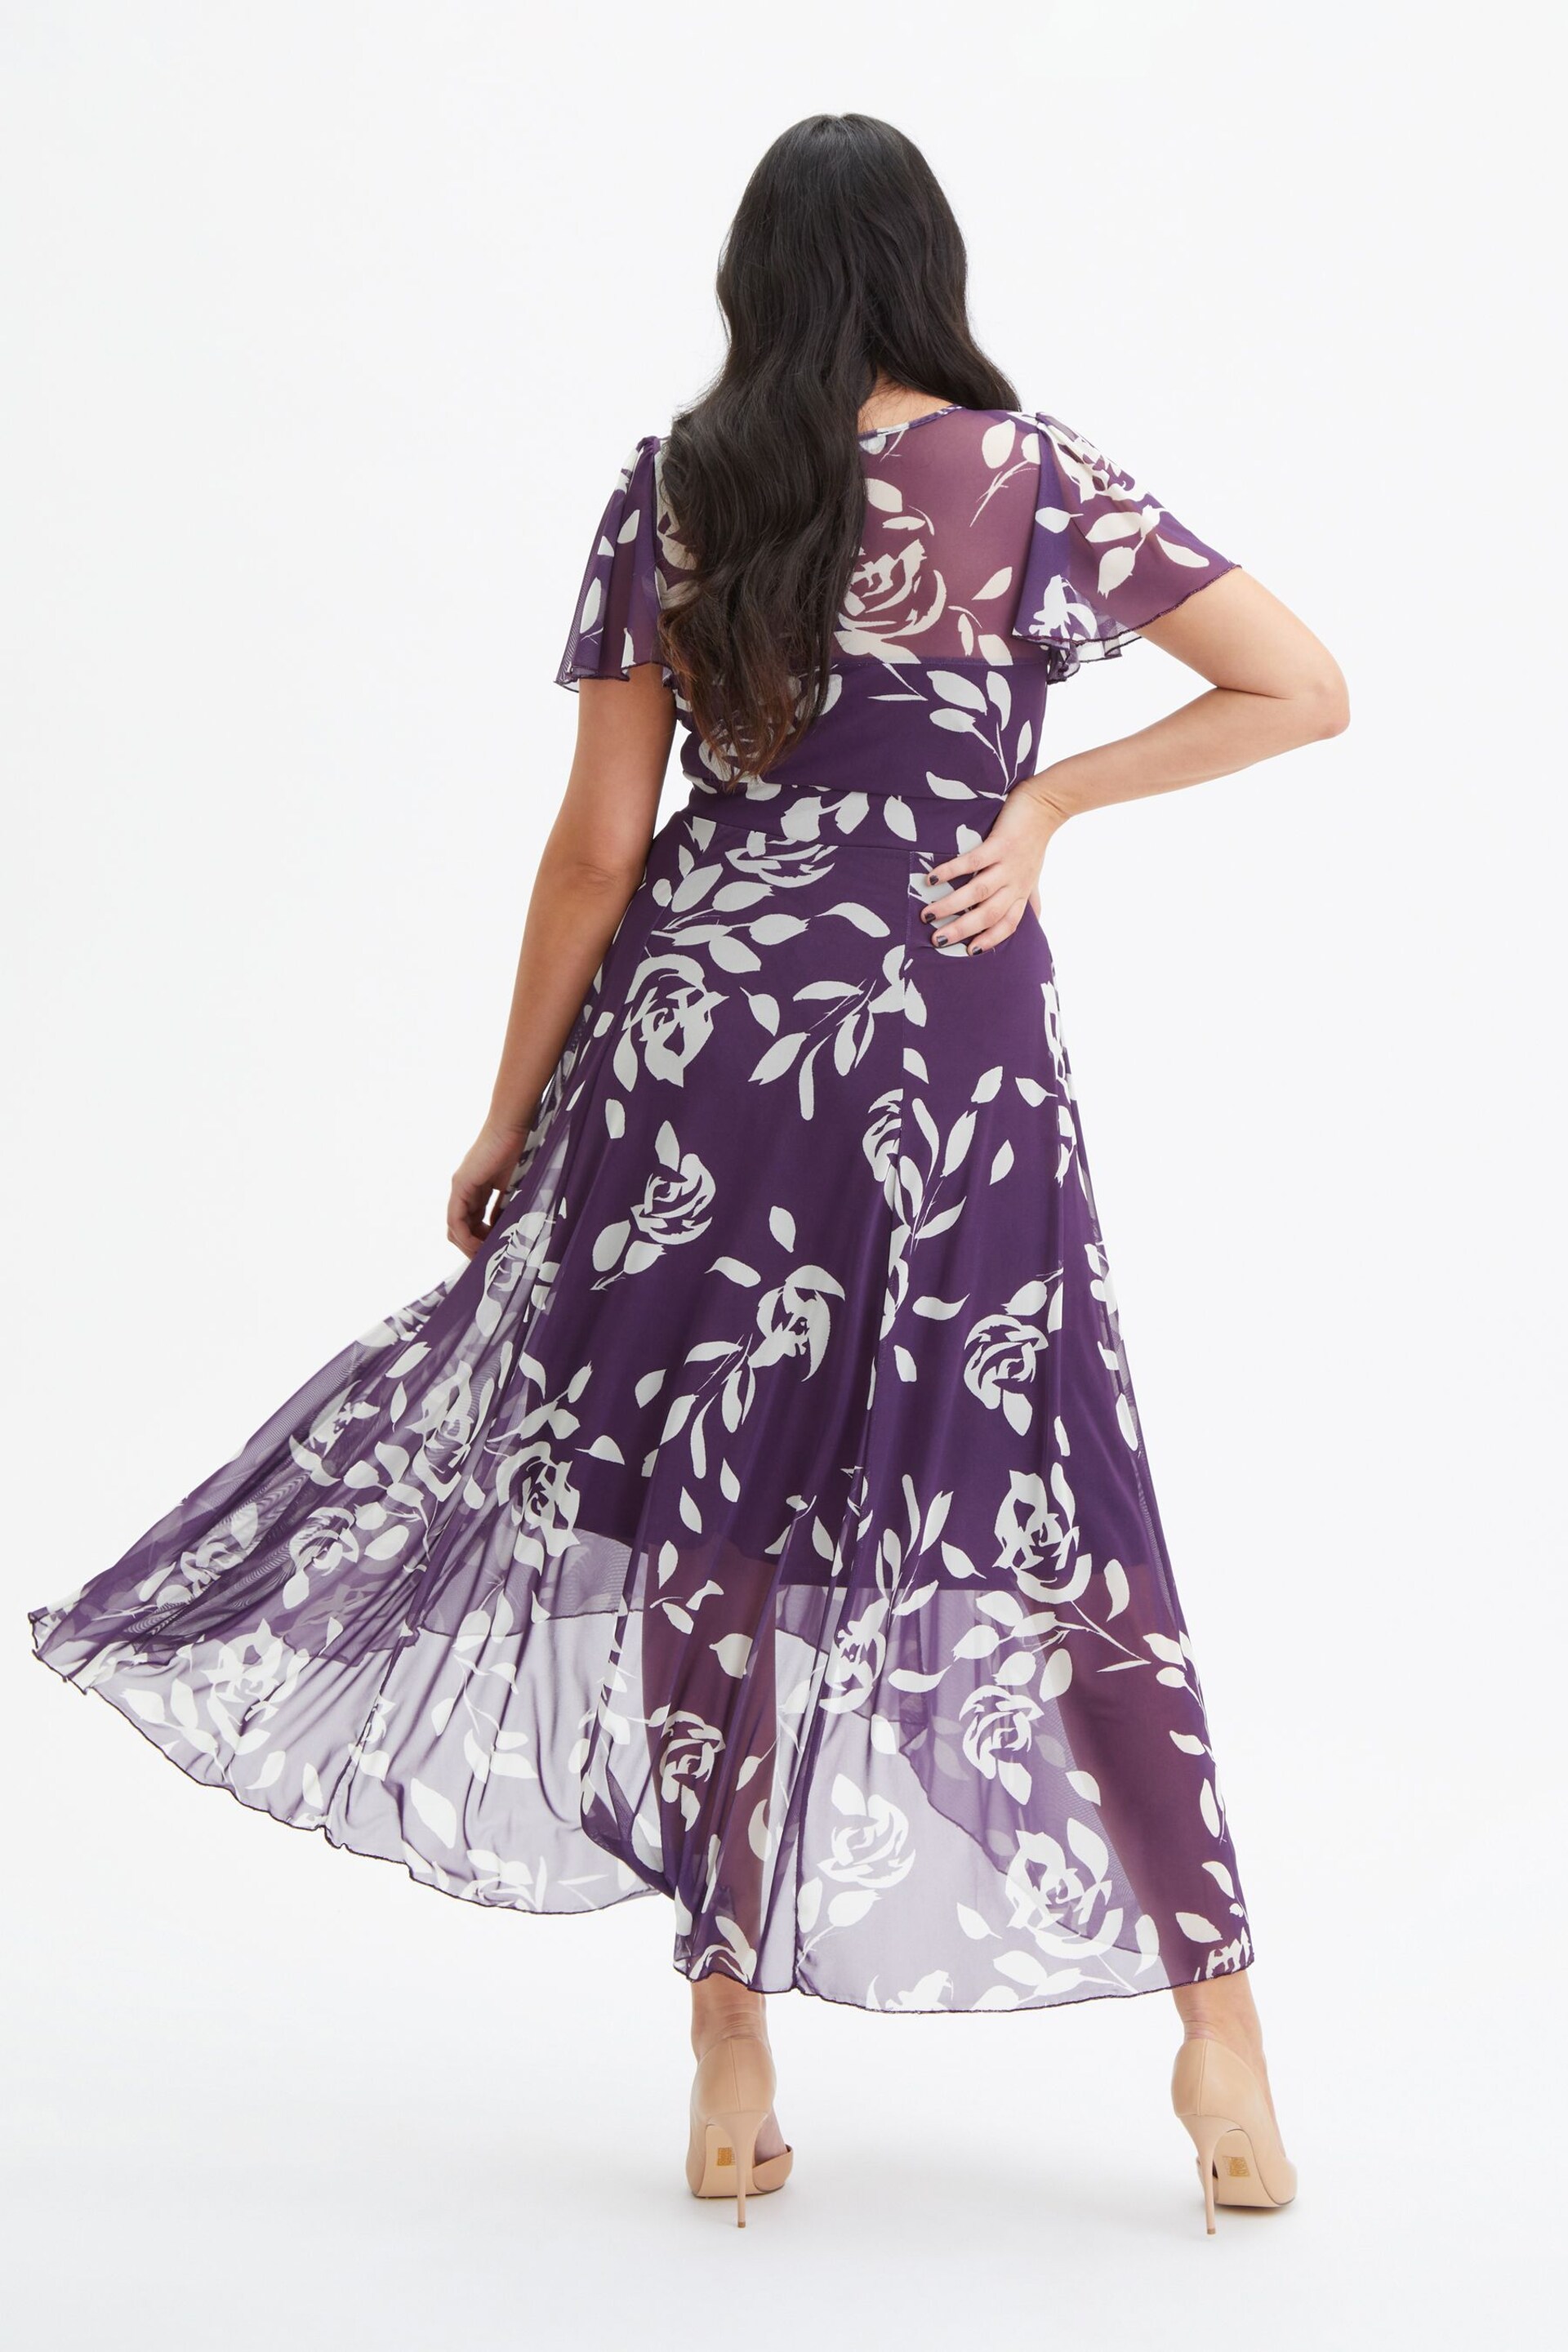 Scarlett & Jo Purple Tilly Print Angel Sleeve Sweetheart Dress - Image 2 of 4